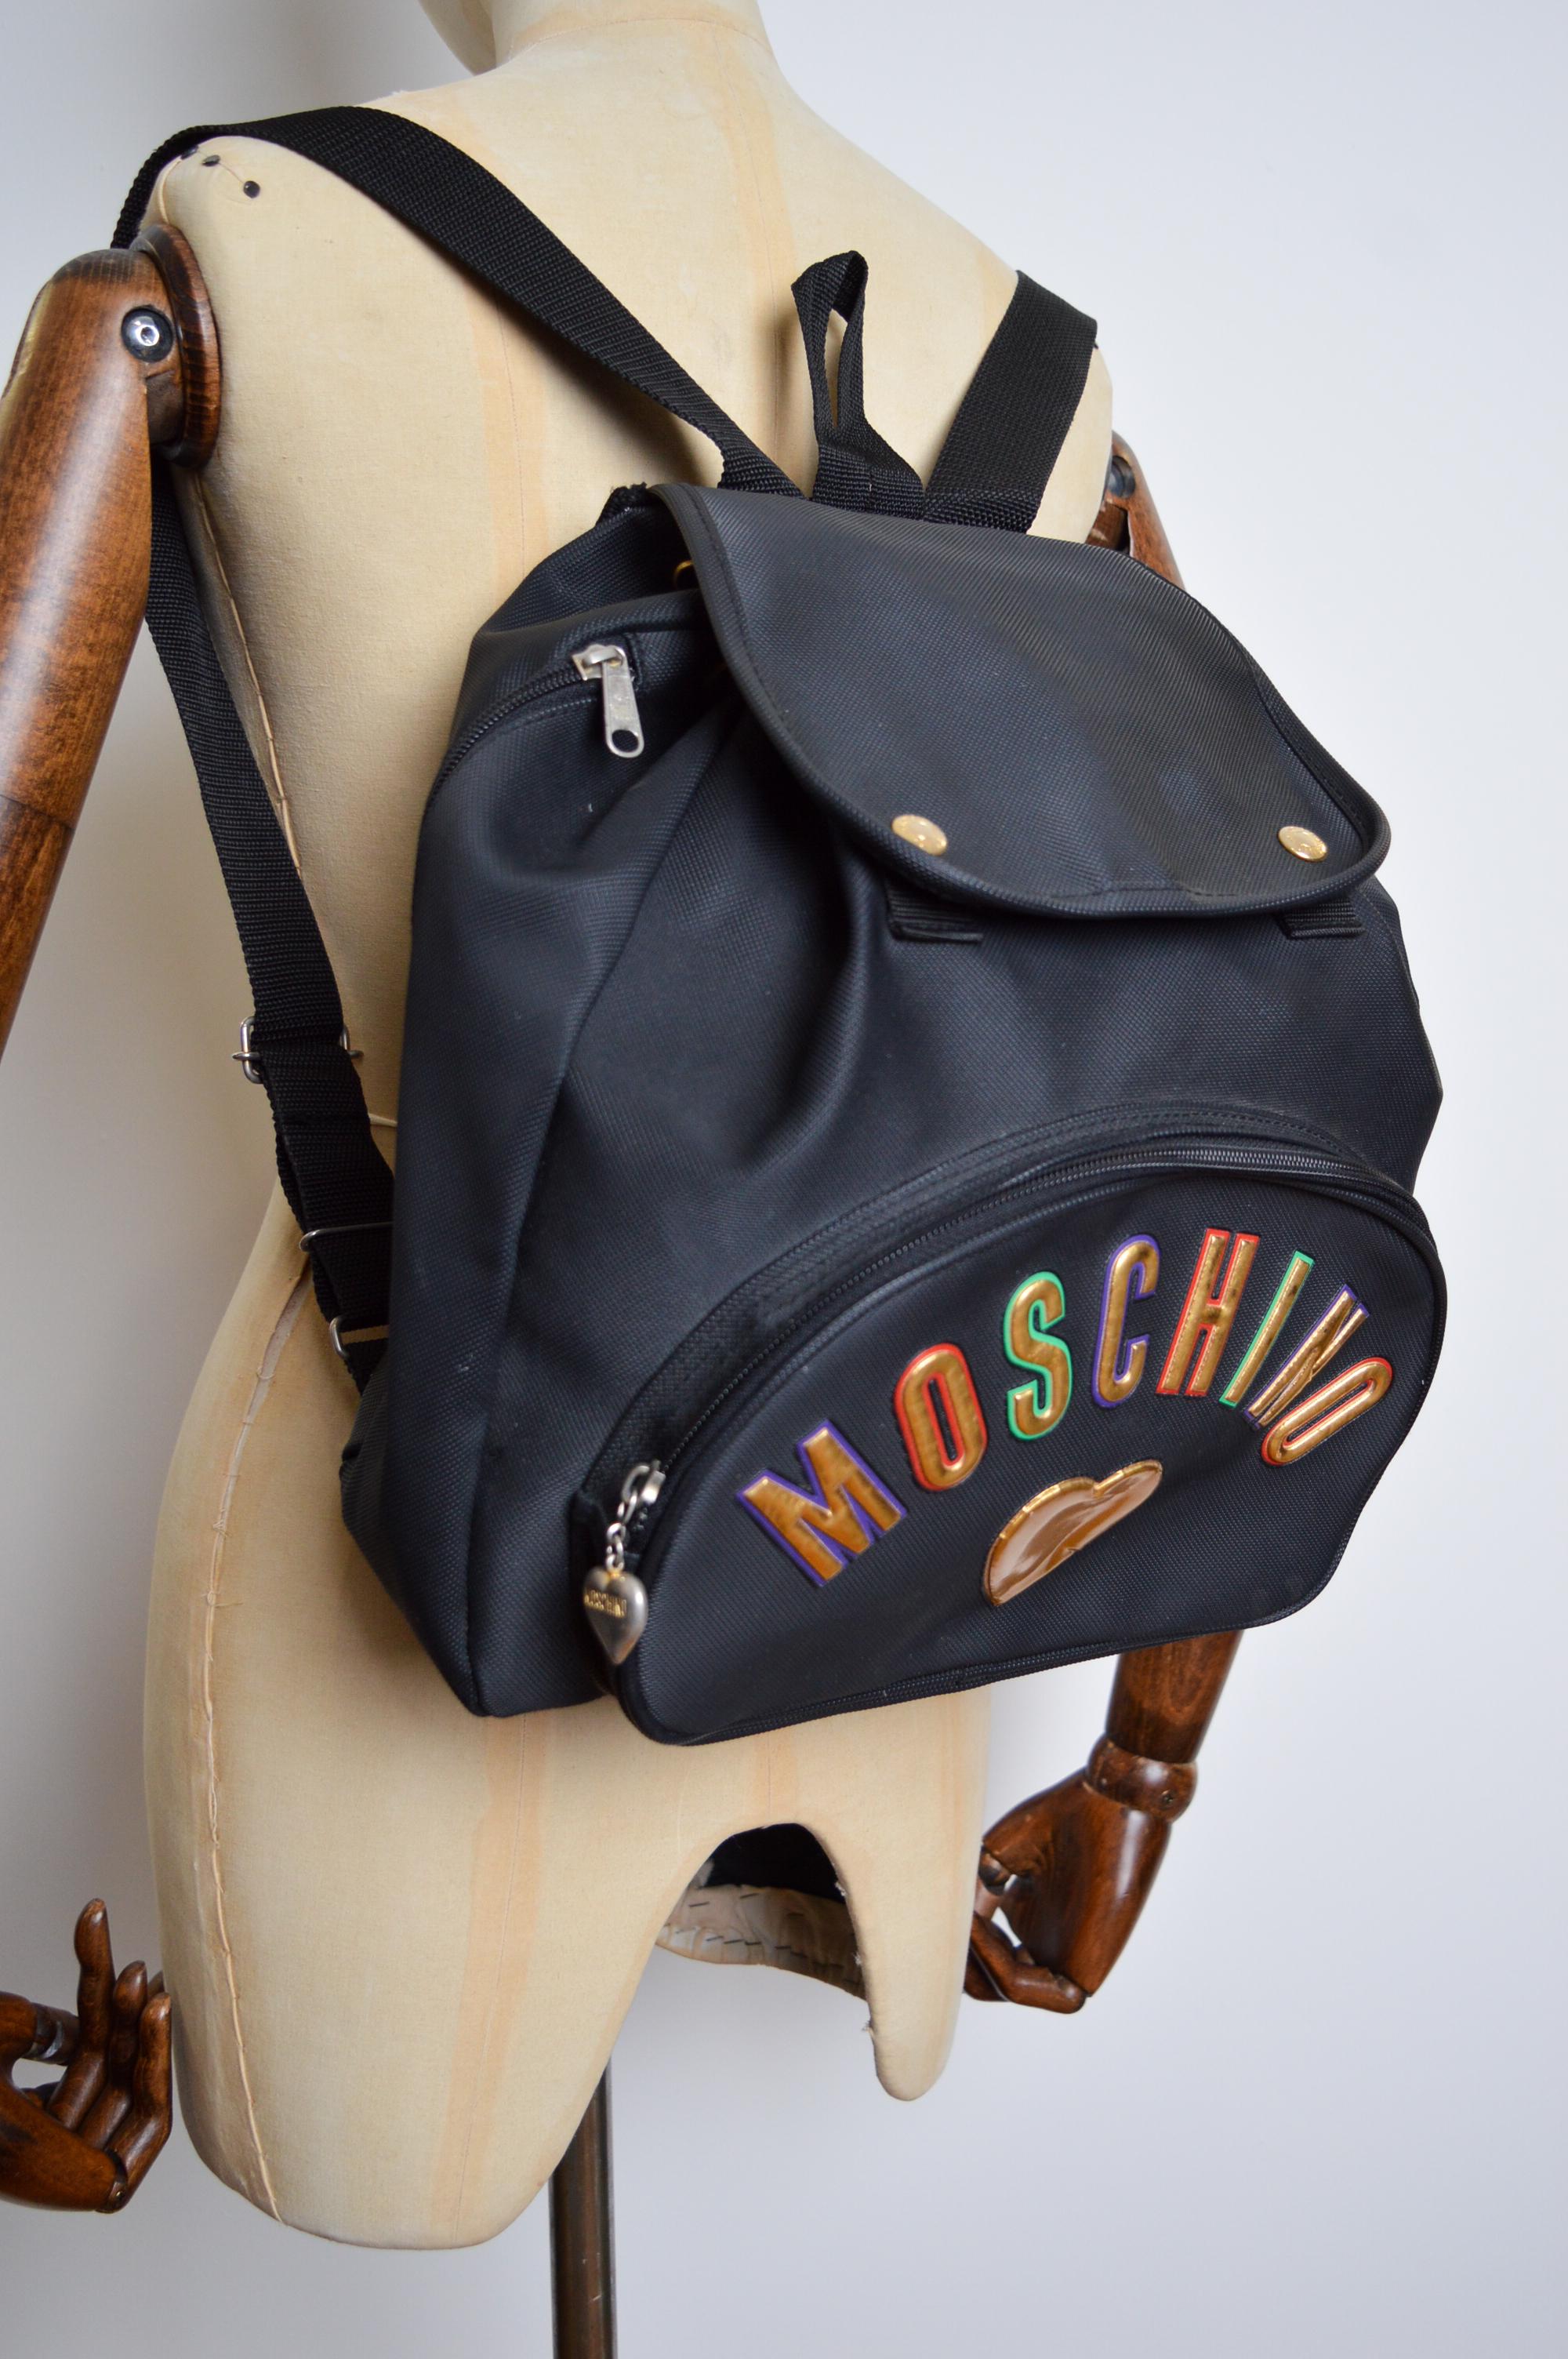 Sac à dos en vinyle noir Moschino vintage des années 1990, avec grandes lettres 'MOSCHINO'.   Une pièce vintage iconique des années 90 !   

FABRIQUÉ EN ITALIE !   

Caractéristiques : Grandes lettres épelées 